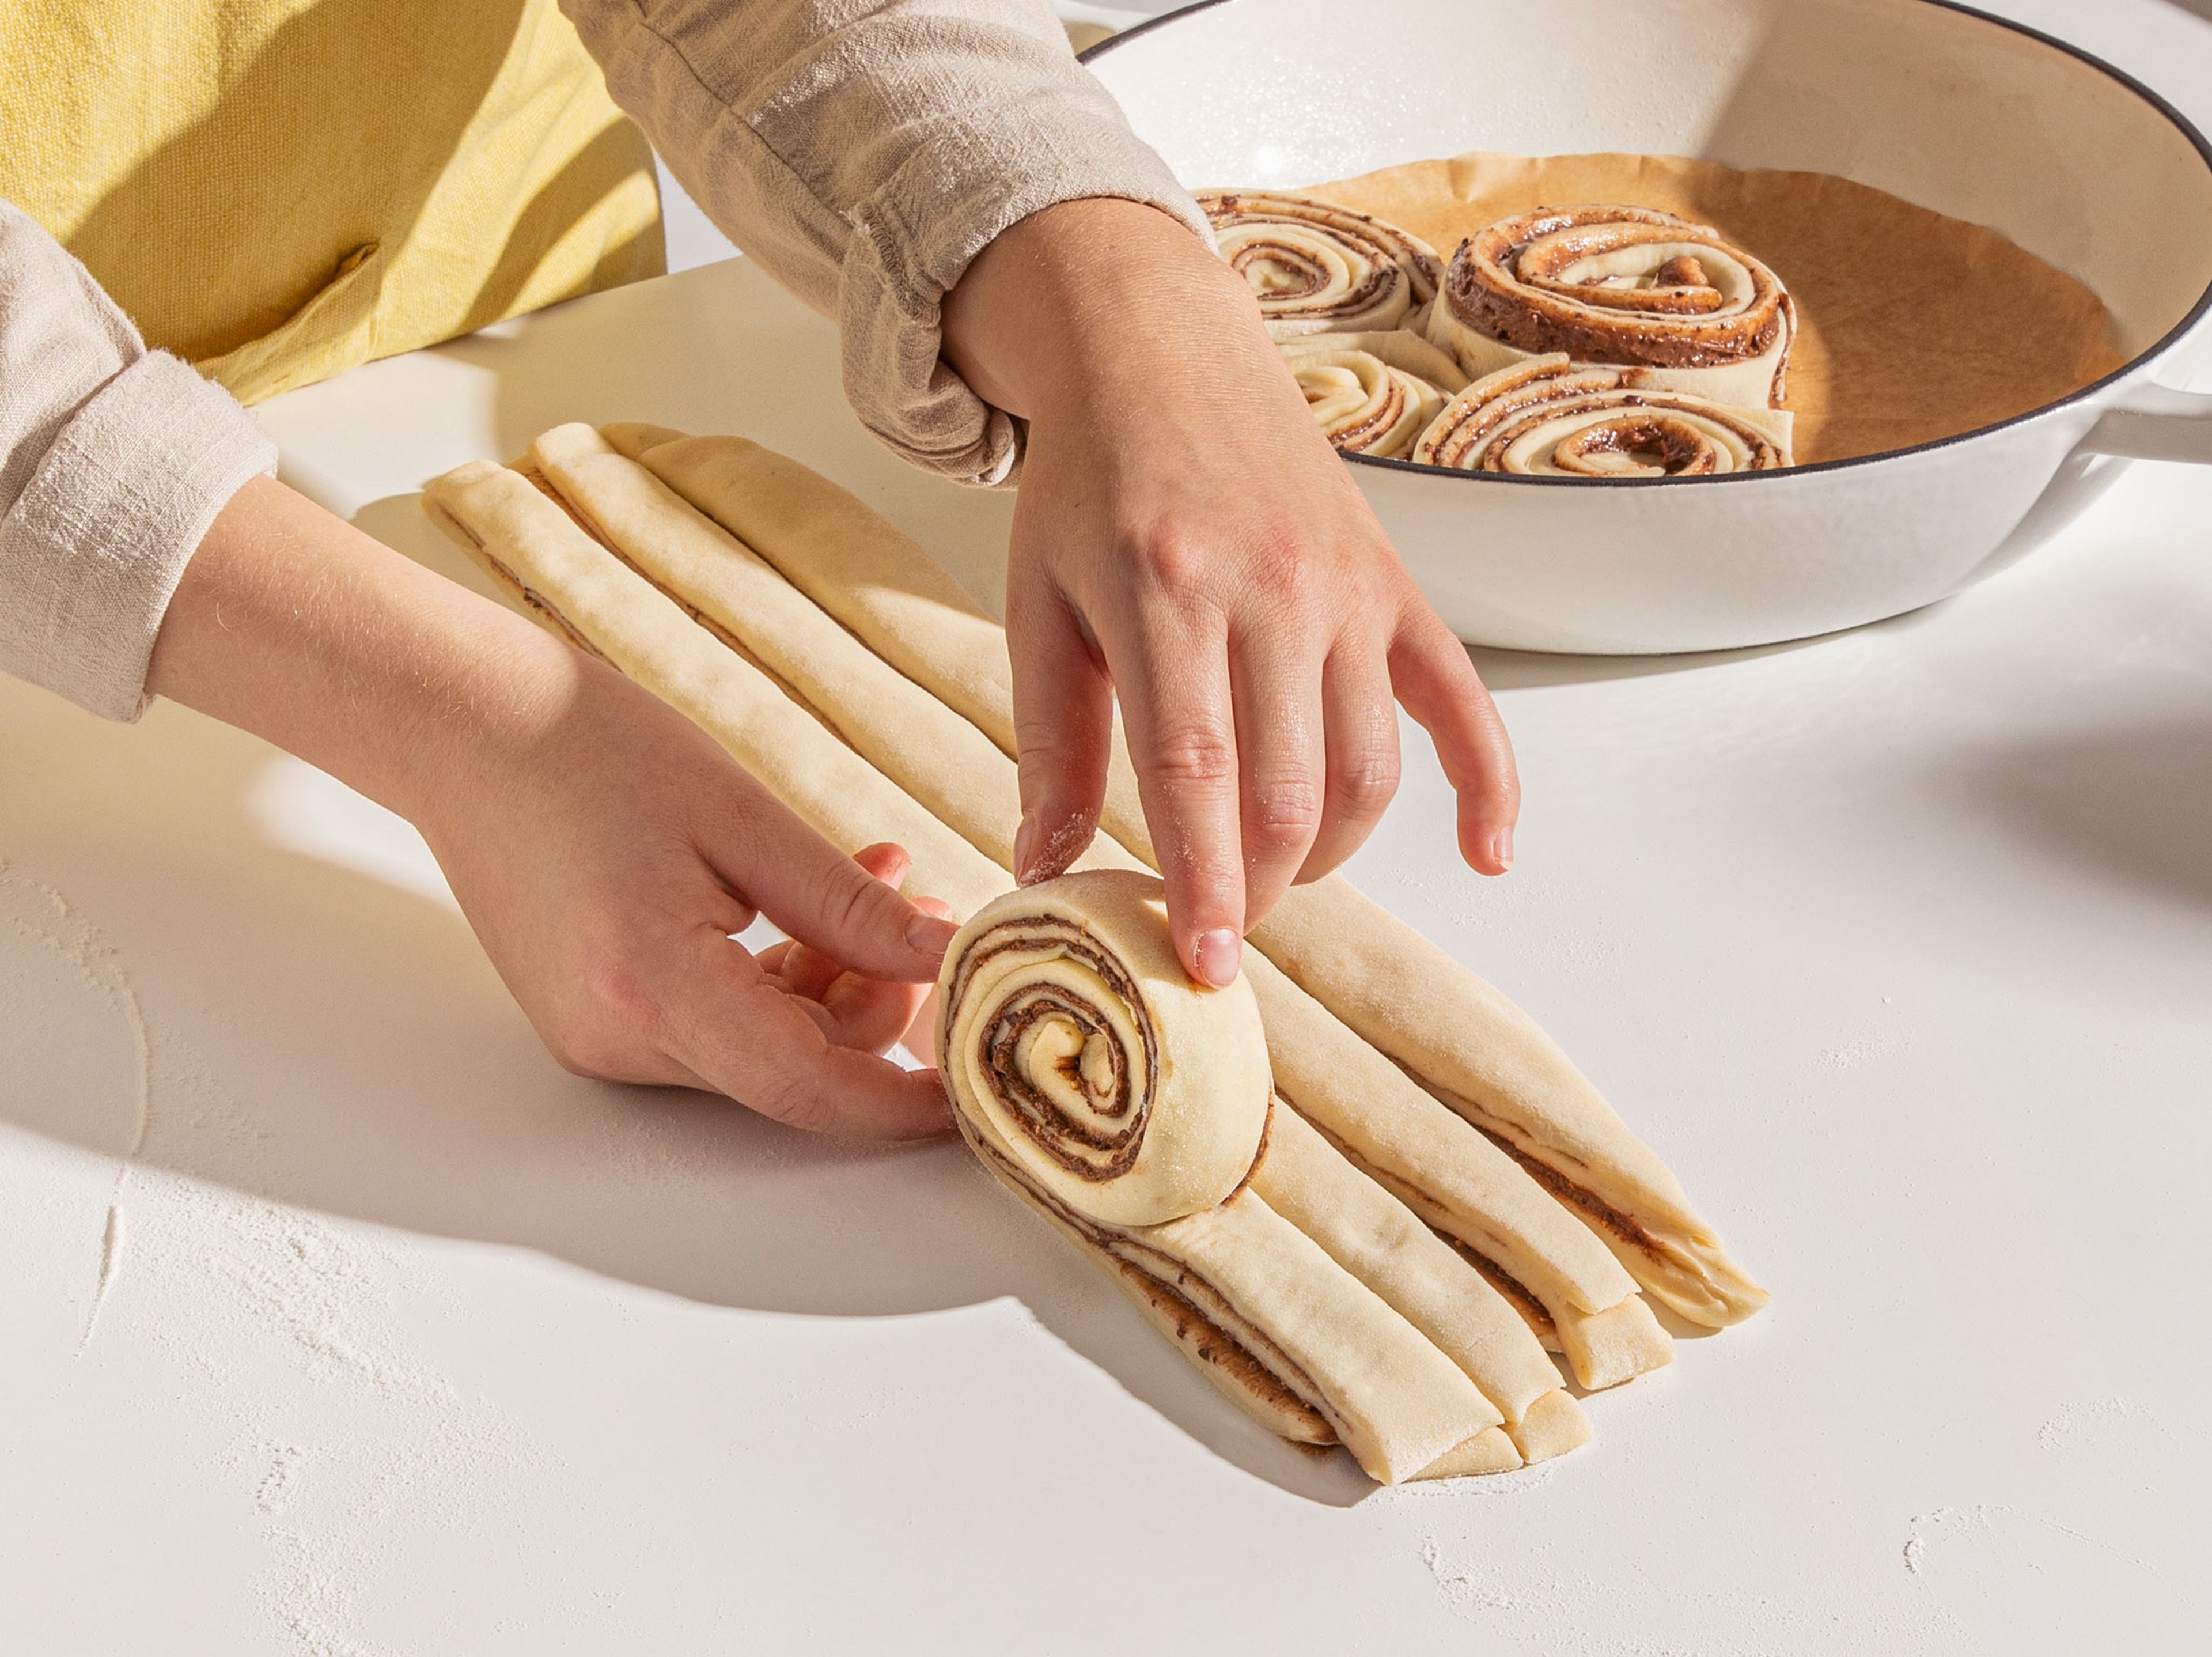 Nach der Ruhezeit wird der Teig mit Hilfe des Nudelholzes noch etwas flacher ausgerollt. Mit einem Messer oder Pizzaschneider kann das Rechteck nun längs in 8 gleich dicke Stränge geschnitten werden. Die Stränge werden anschließend einzeln aufgerollt, und das Ende der Schnecke auf der Unterseite versteckt. Die fertigen Schnecken werden kreisförmig in eine mit Backpapier ausgelegte runde Backform platziert und ruhen locker abgedeckt mit einem Geschirrtuch, für ca. 1 Std. Nach dem Ruhen sollten sich die Schnecken berühren.